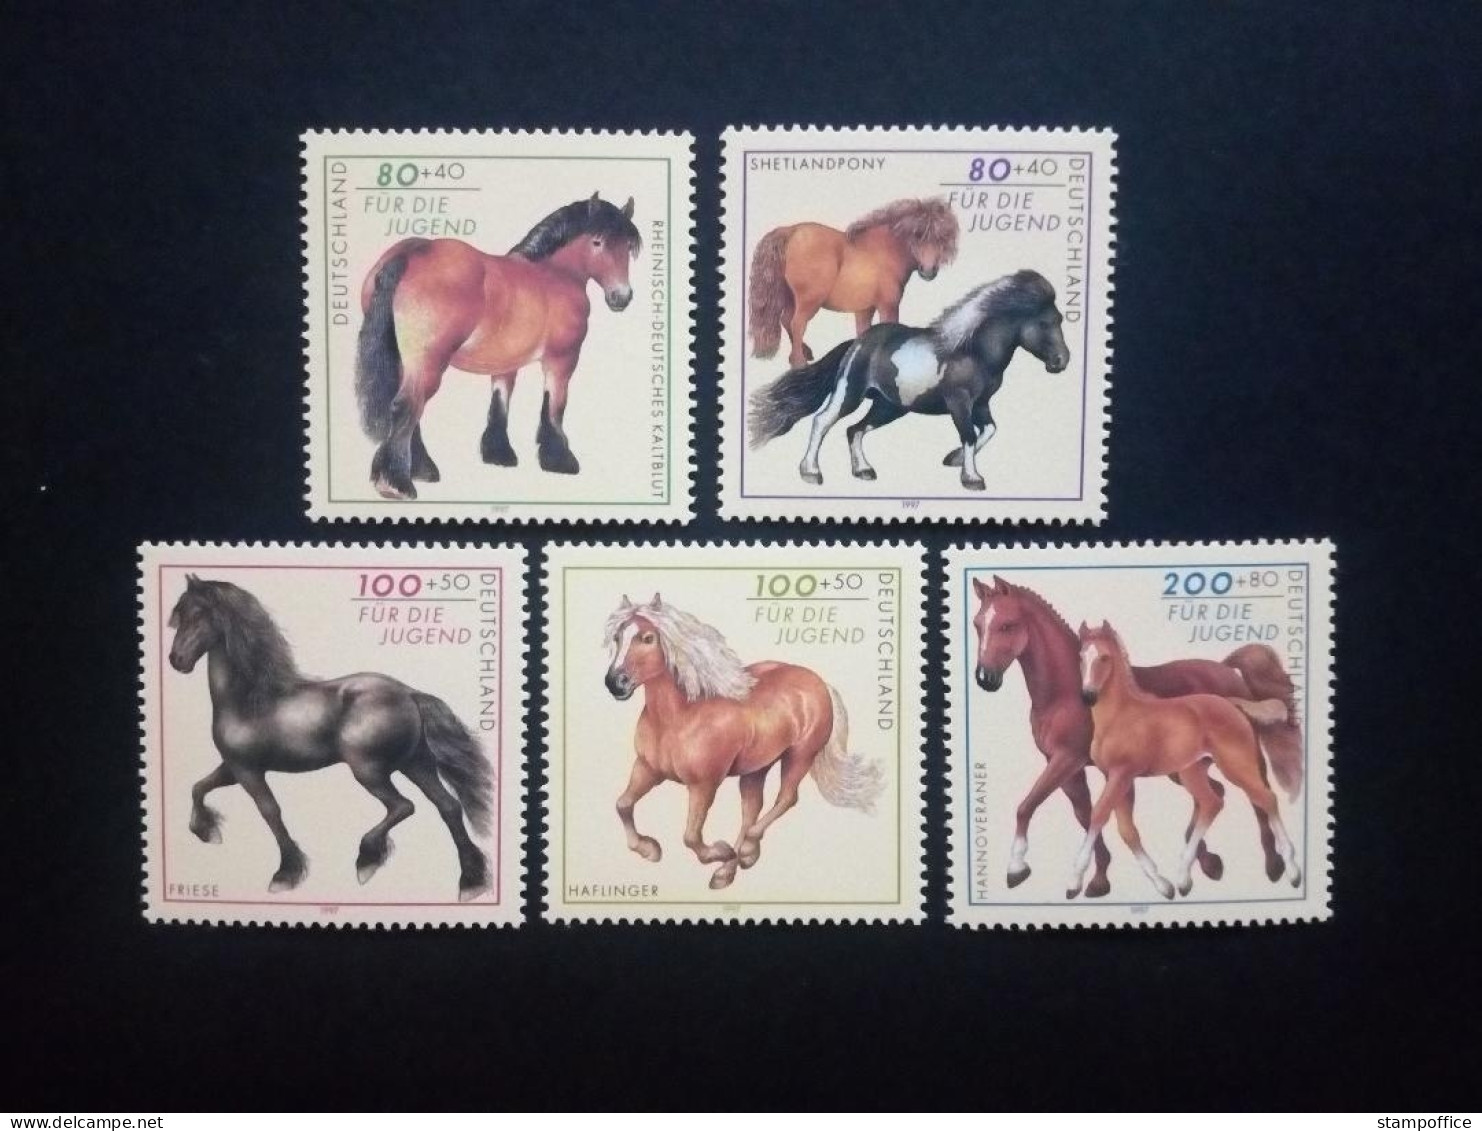 DEUTSCHLAND MI-NR. 1920-1924 POSTFRISCH(MINT) JUGEND 1997 PFERDERASSEN HAFLINGER PONY - Paarden